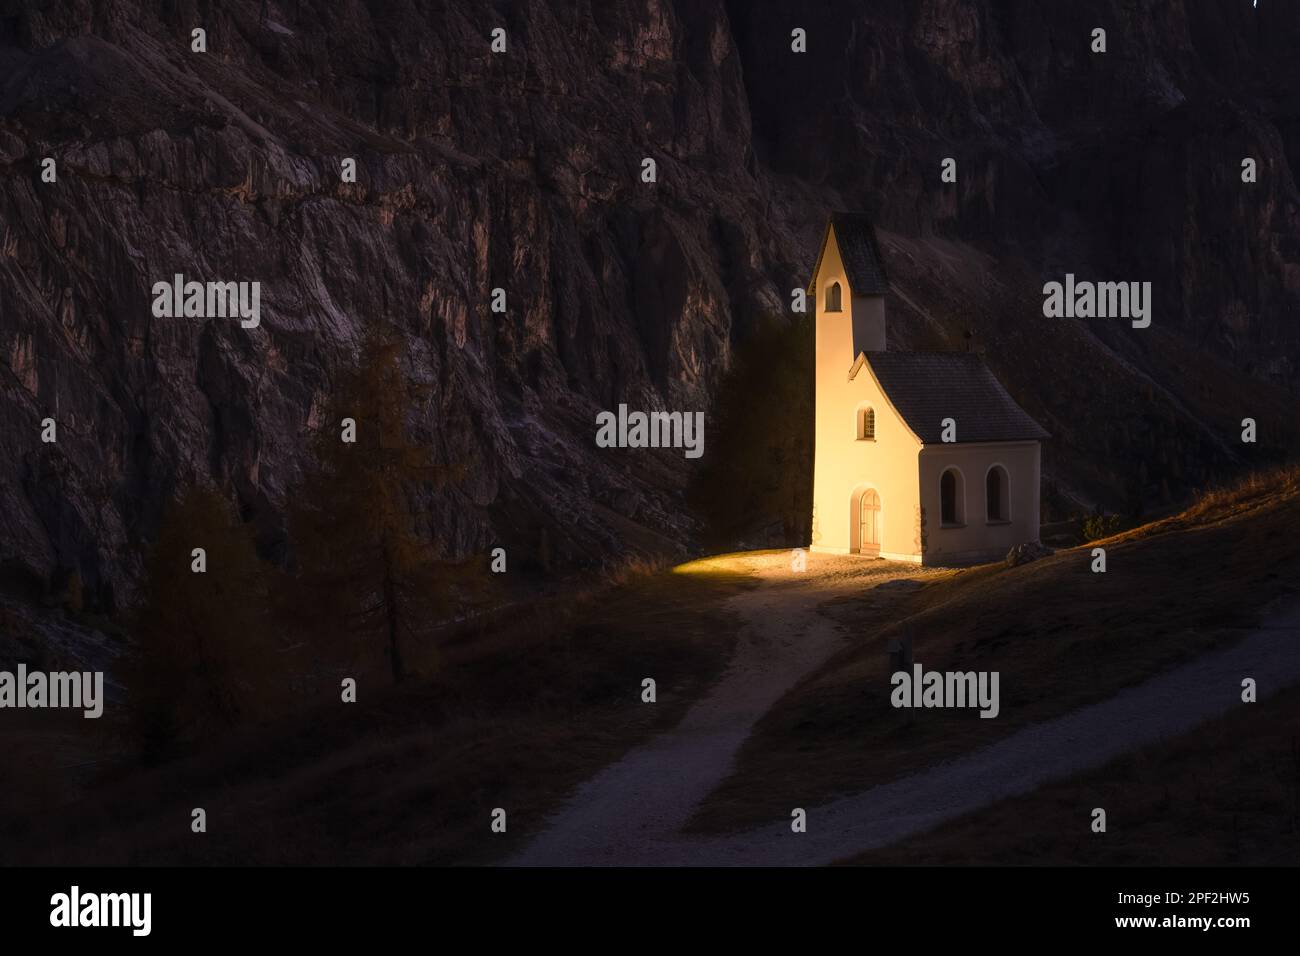 Unglaubliche Aussicht auf die kleine iIlluminated Chapel - Kapelle Ciapela am Grödner Pass, italienische Dolomiten Berge. Dolomiten, Italien. Landschaftsfotografie Stockfoto